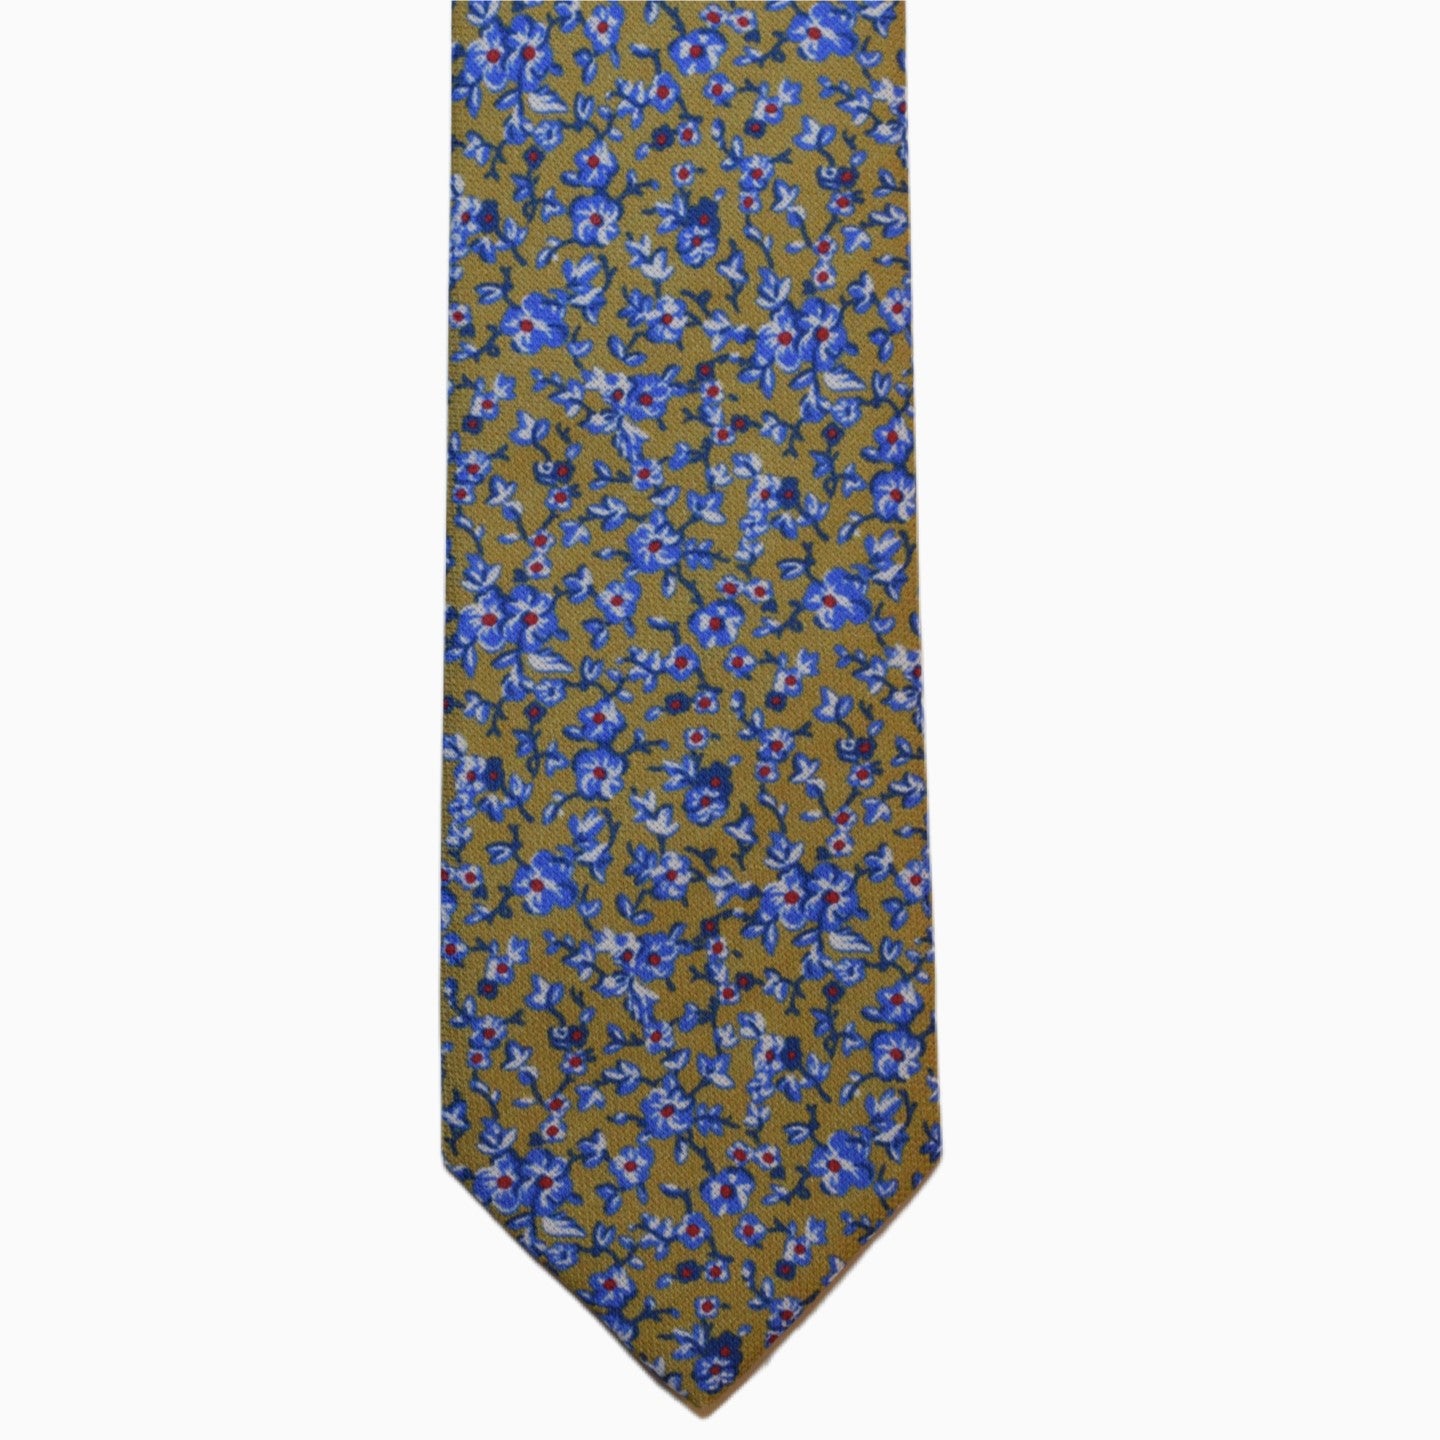 Pasquale Iovinella handmade necktie online shop